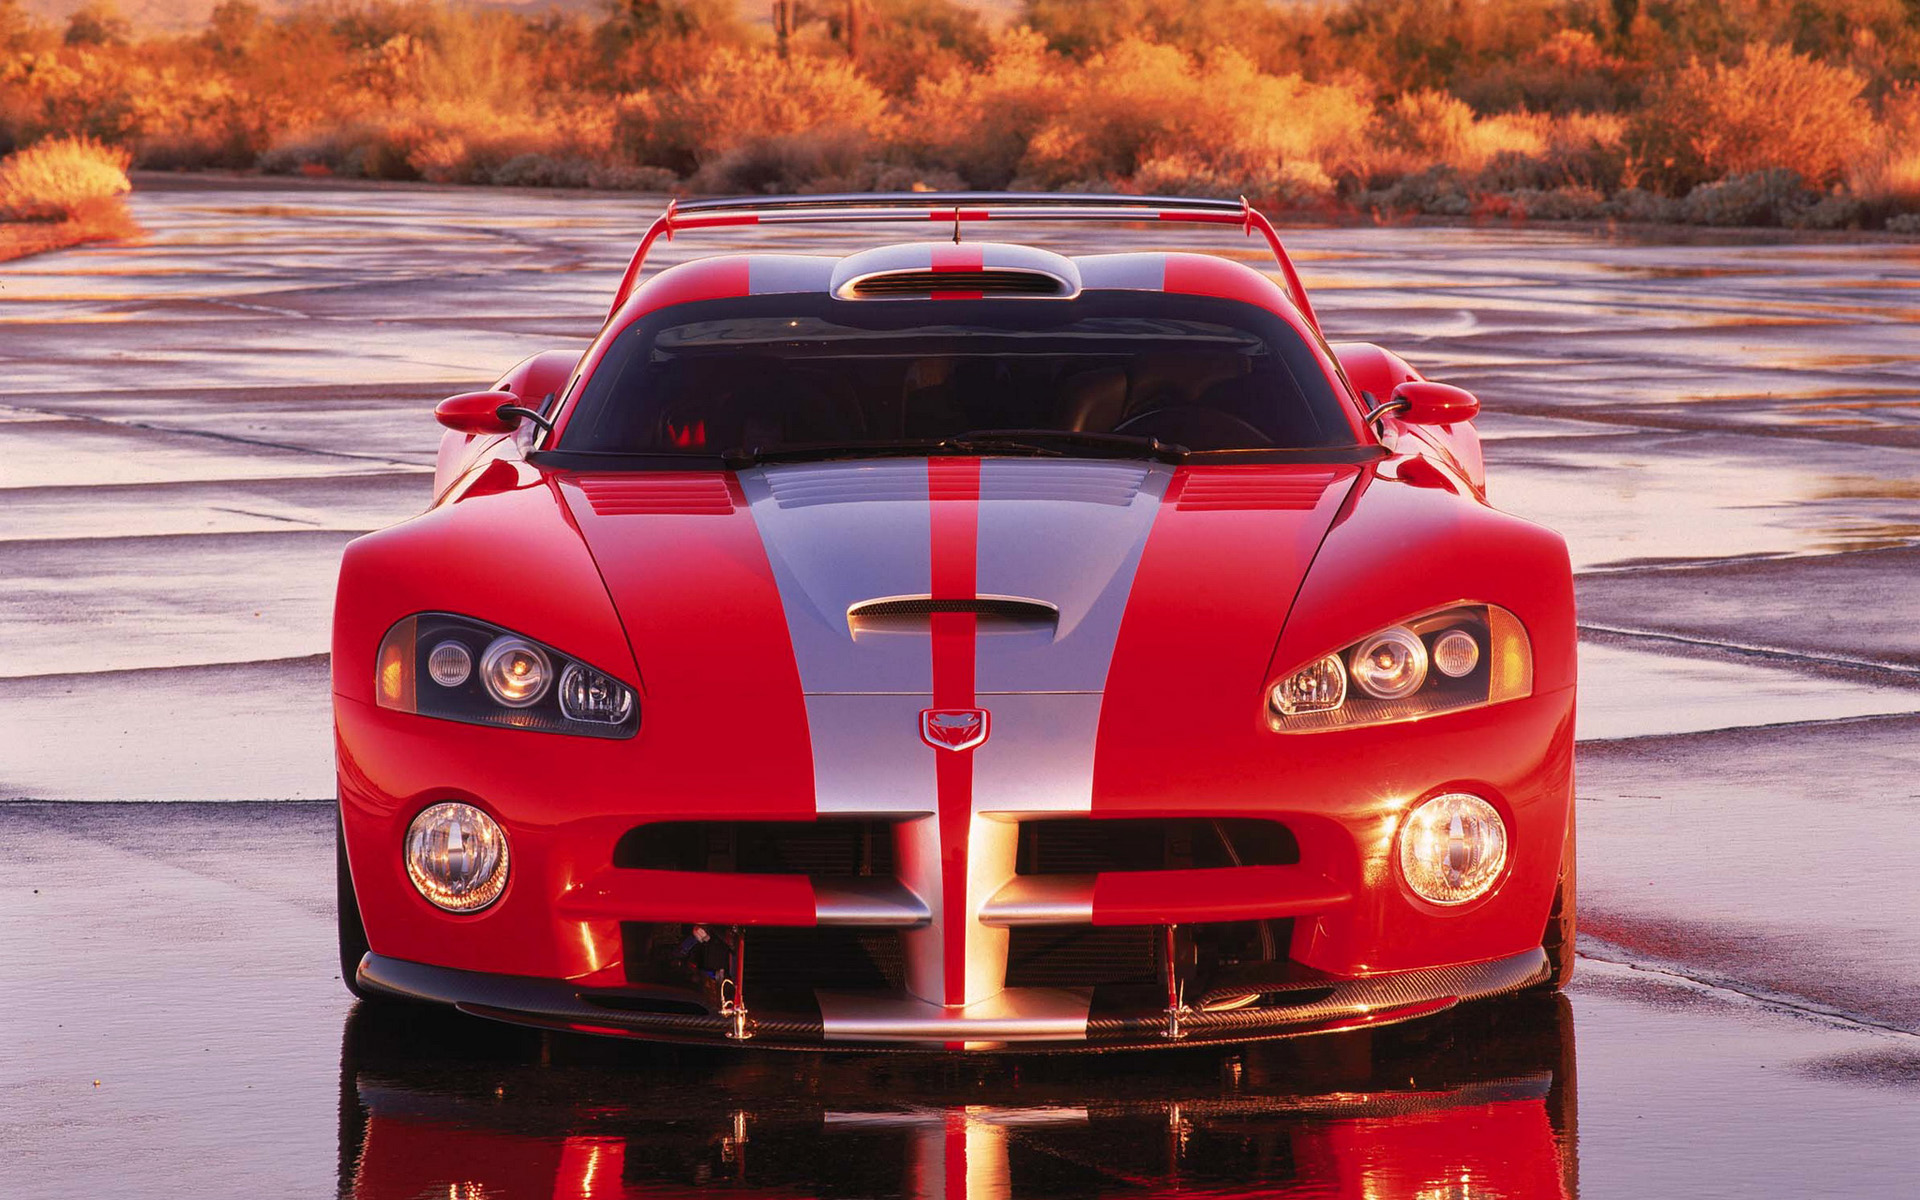  2000 Dodge Viper GTS-R Concept Wallpaper.